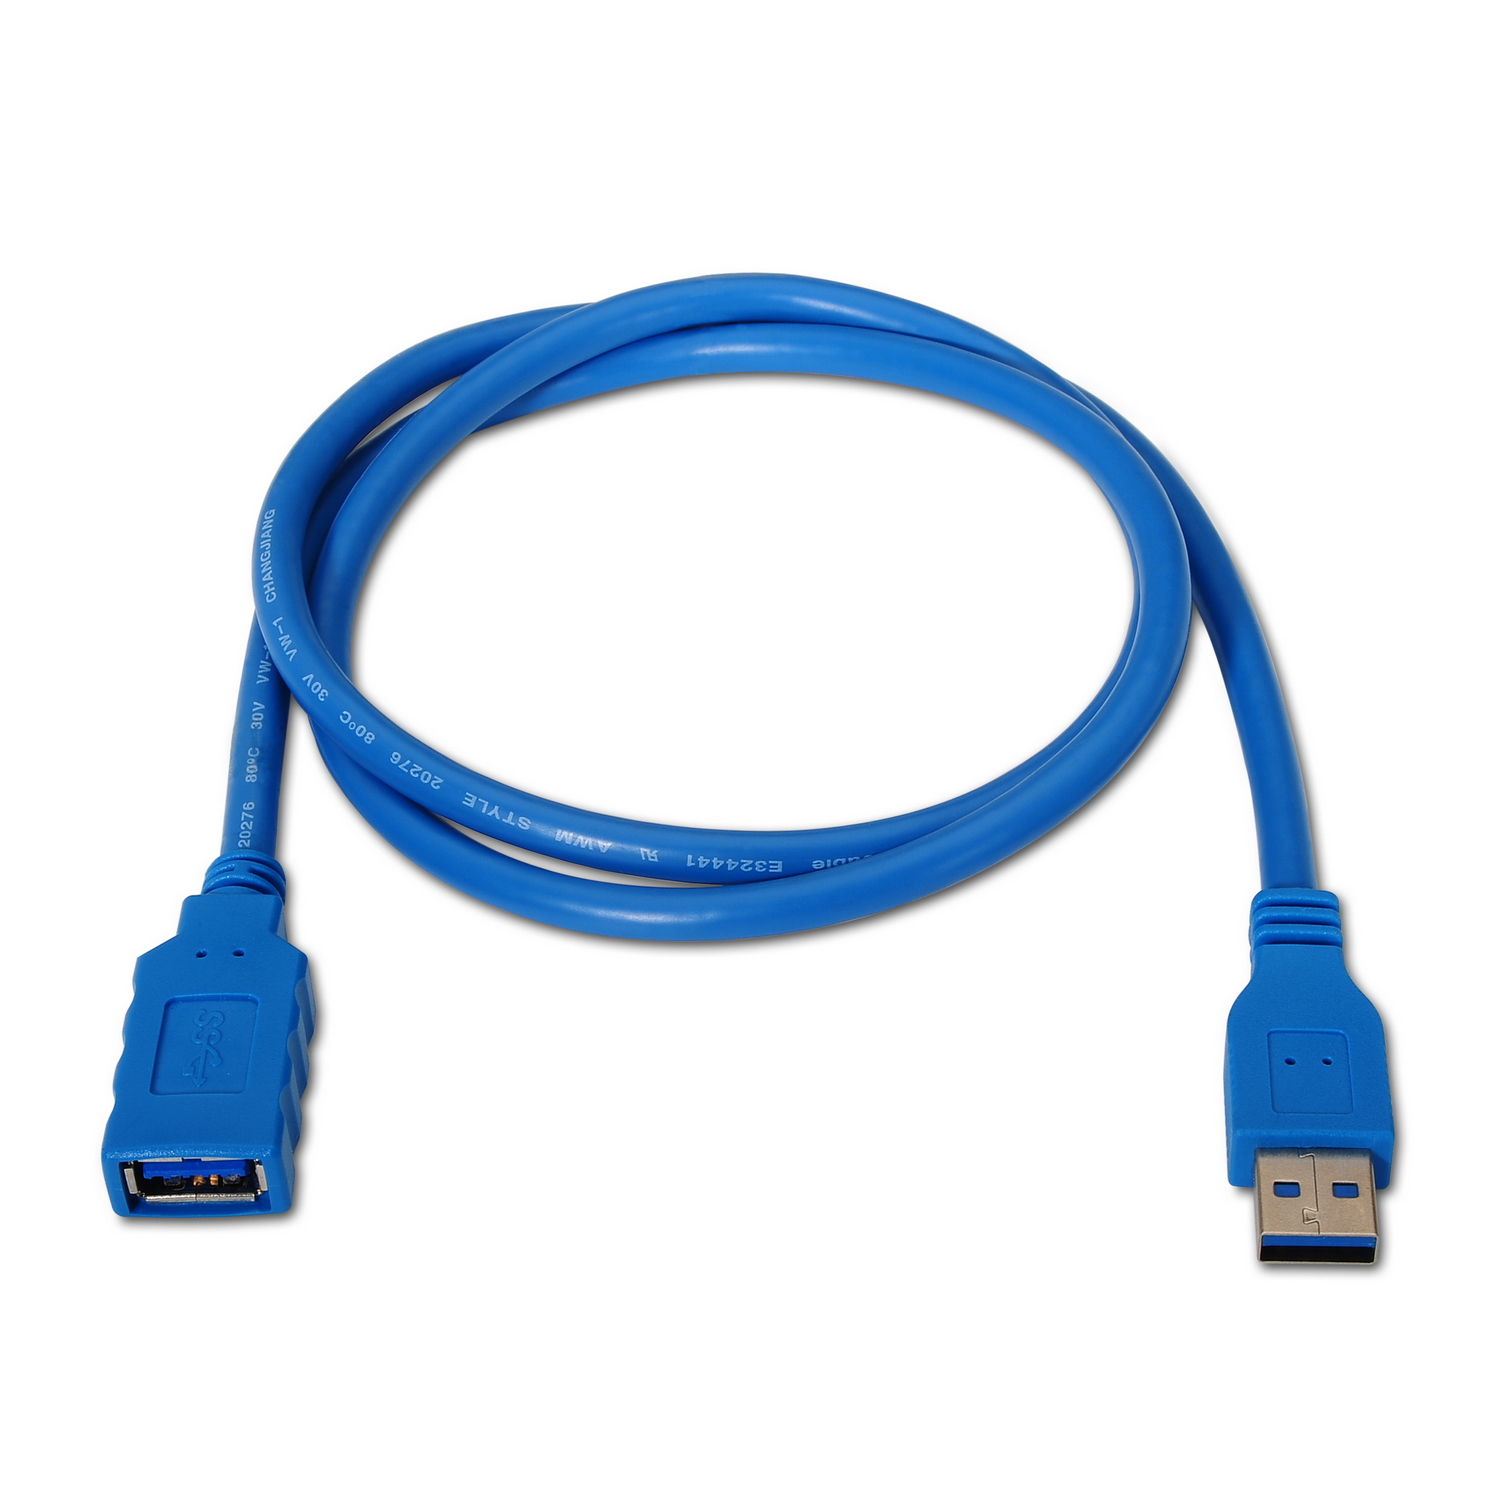 Cable Extensión USB 3.0, tipo A Macho a A Hembra, azul, 2.0 metros